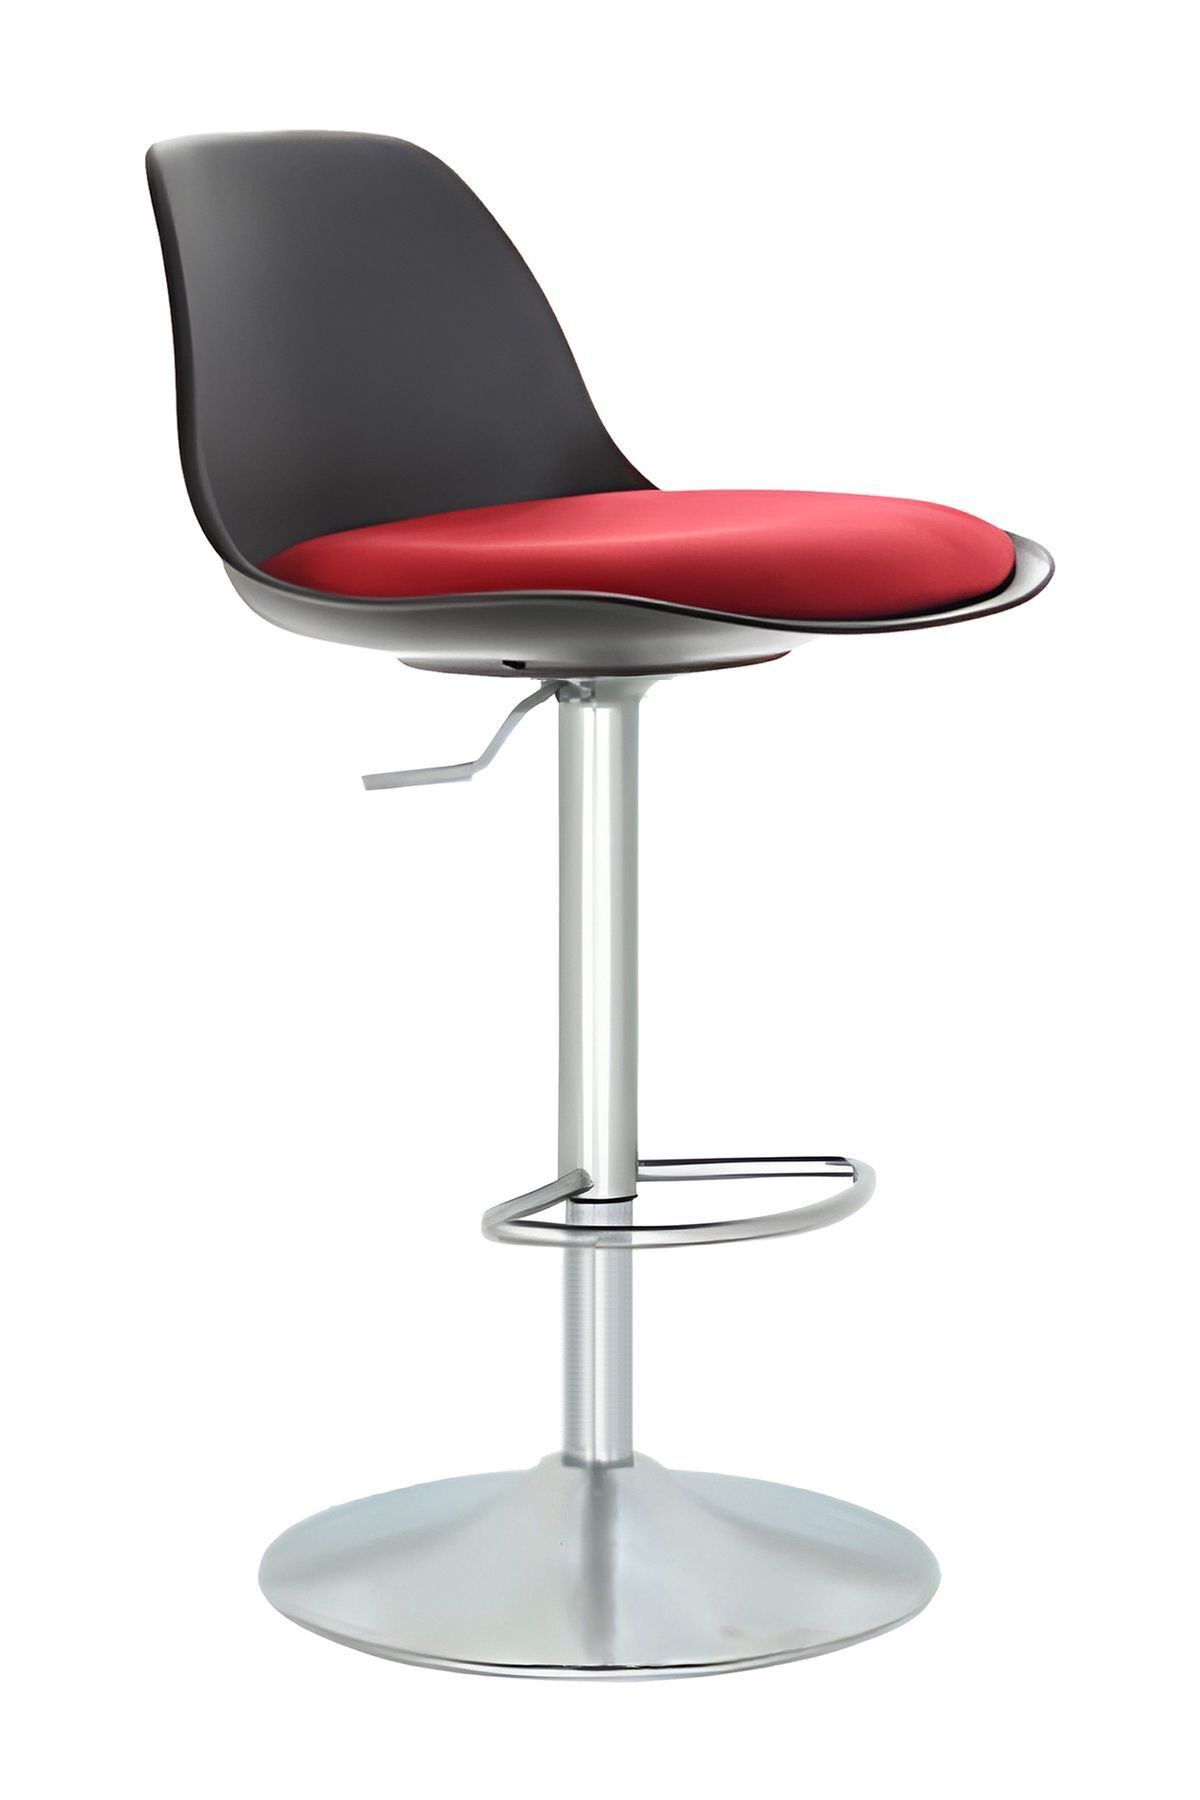 Bürocci Nadya Bar Sandalyesi - Kırmızı Deri - Metal Ayaklı Bar Taburesi - 9537s0116